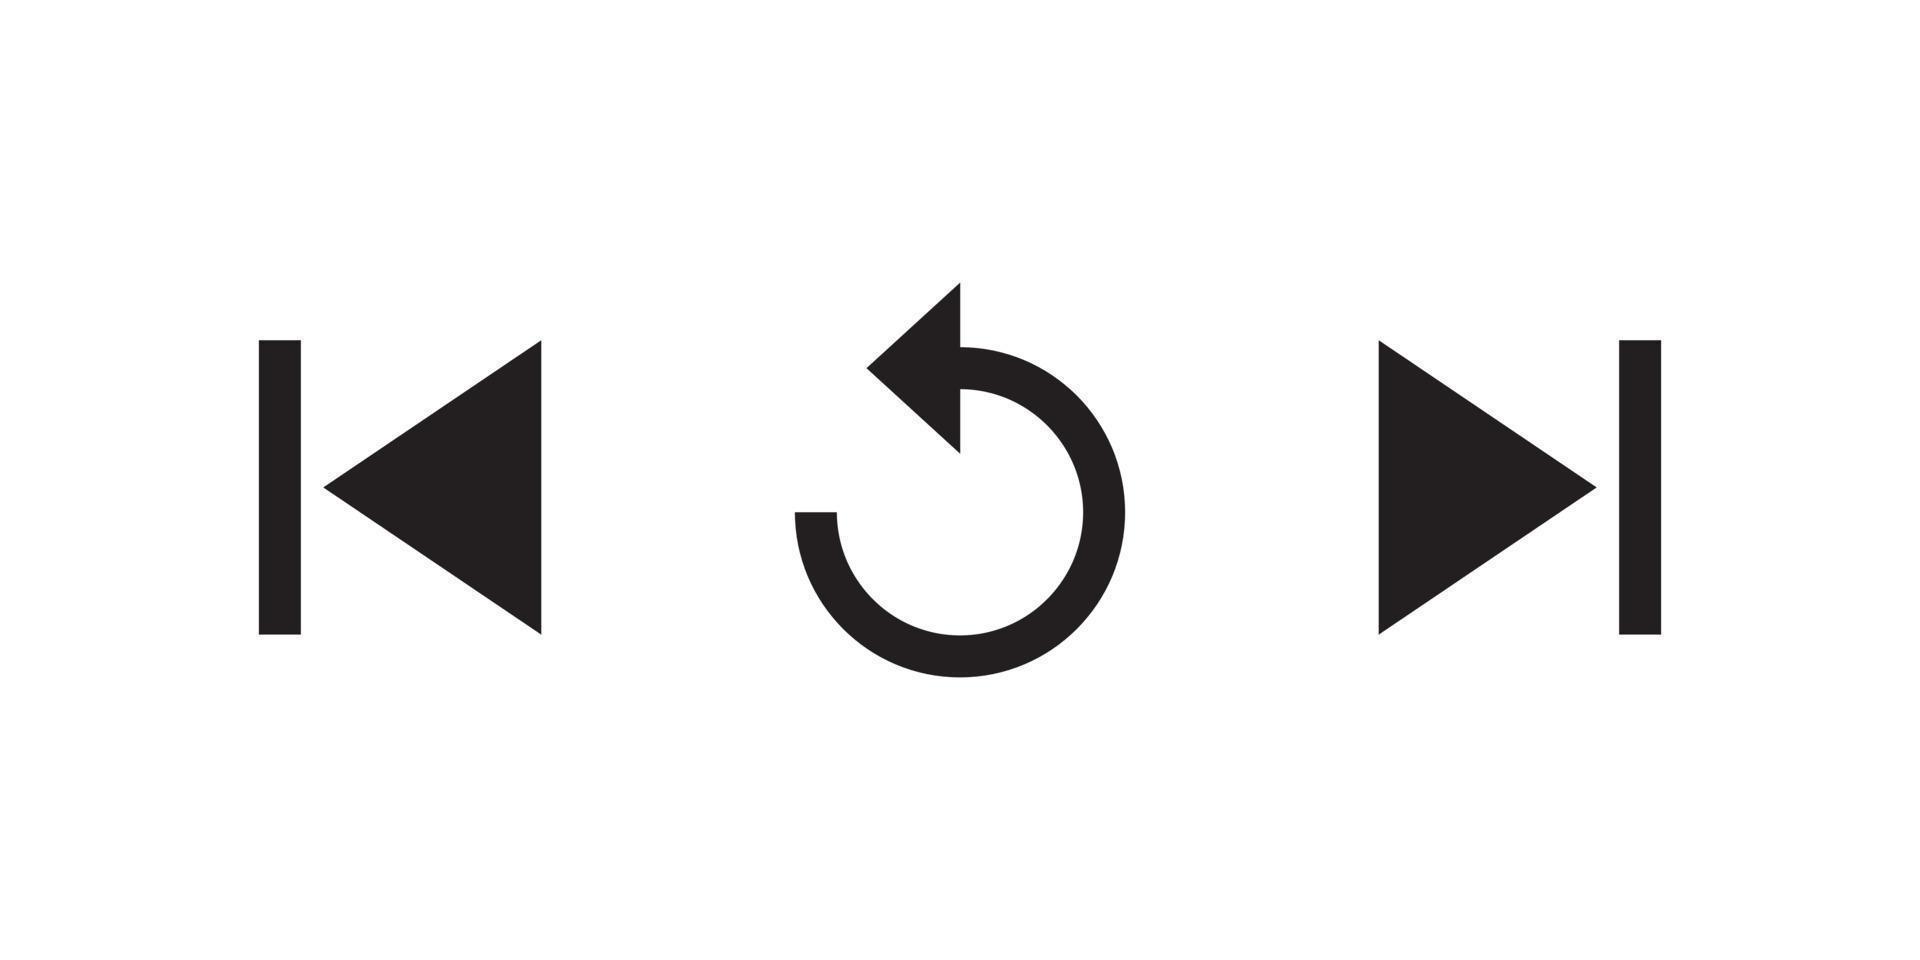 Vorheriges, Wiederholen und Nächstes Symbol des Videoplayers. Musik-UI-Elemente vektor